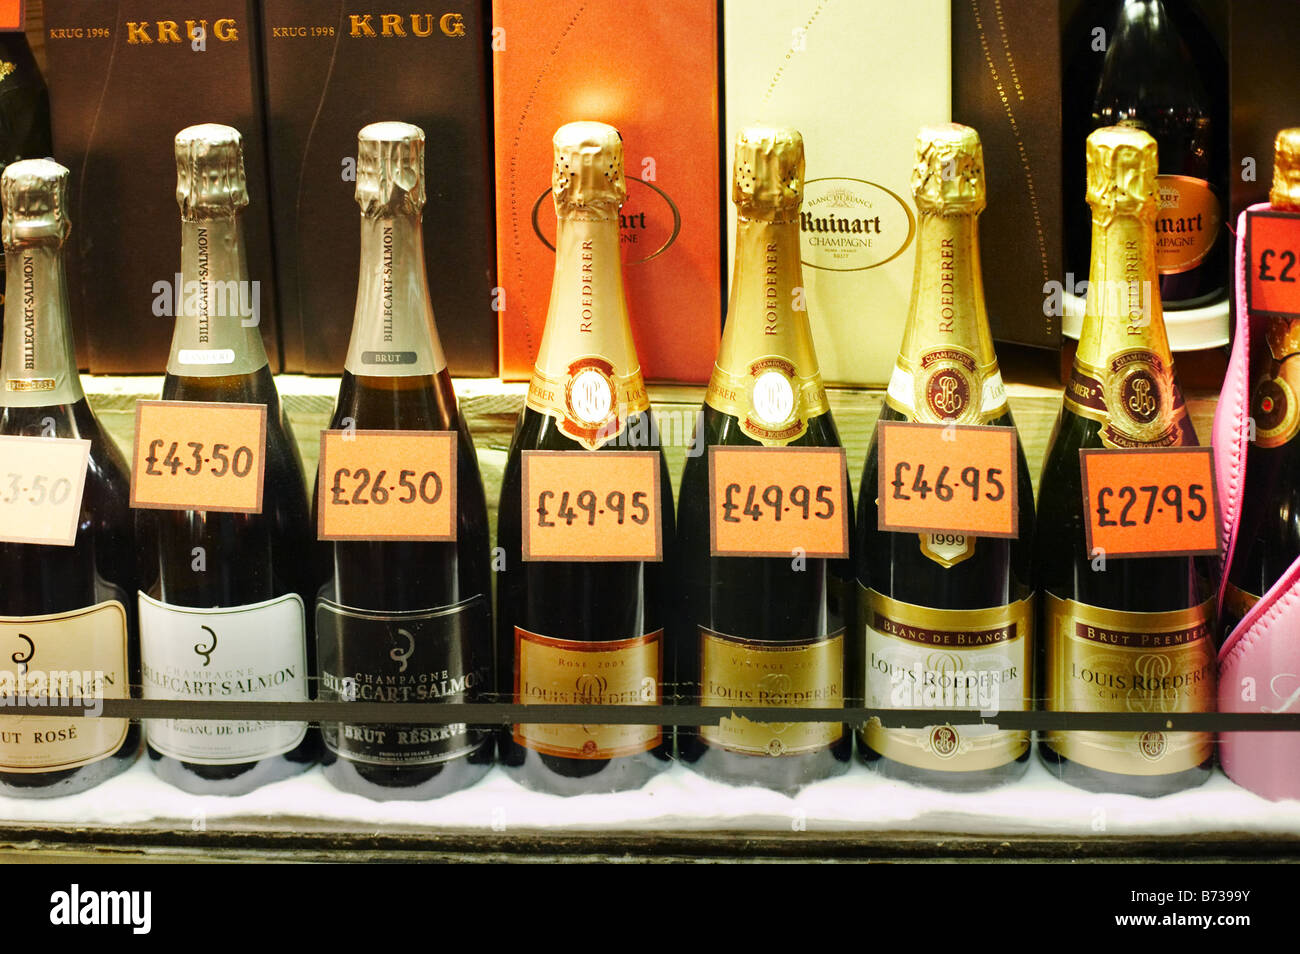 Champagner-Flaschen Getränke Flasche Linie Zeile Alkohol trinken viele verbrauchen binge Einstandspreis London England Großbritannien Großbritannien Verbrauch kaufen Stockfoto